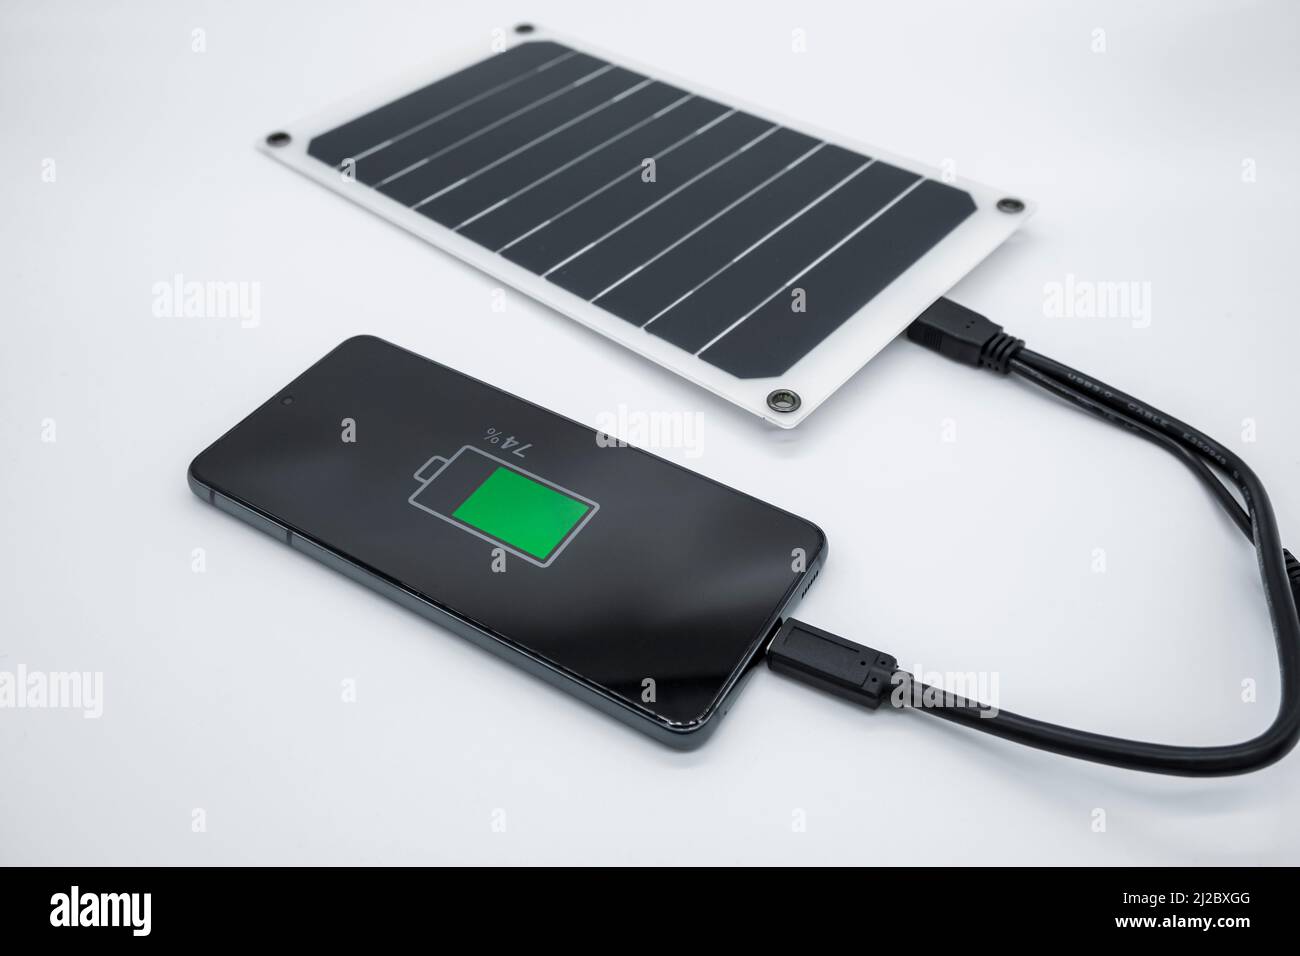 Smartphone-Ladefunktion mit tragbarer Photovoltaik-Solaranlage, erneuerbare grüne Energie-Technologie Stockfoto